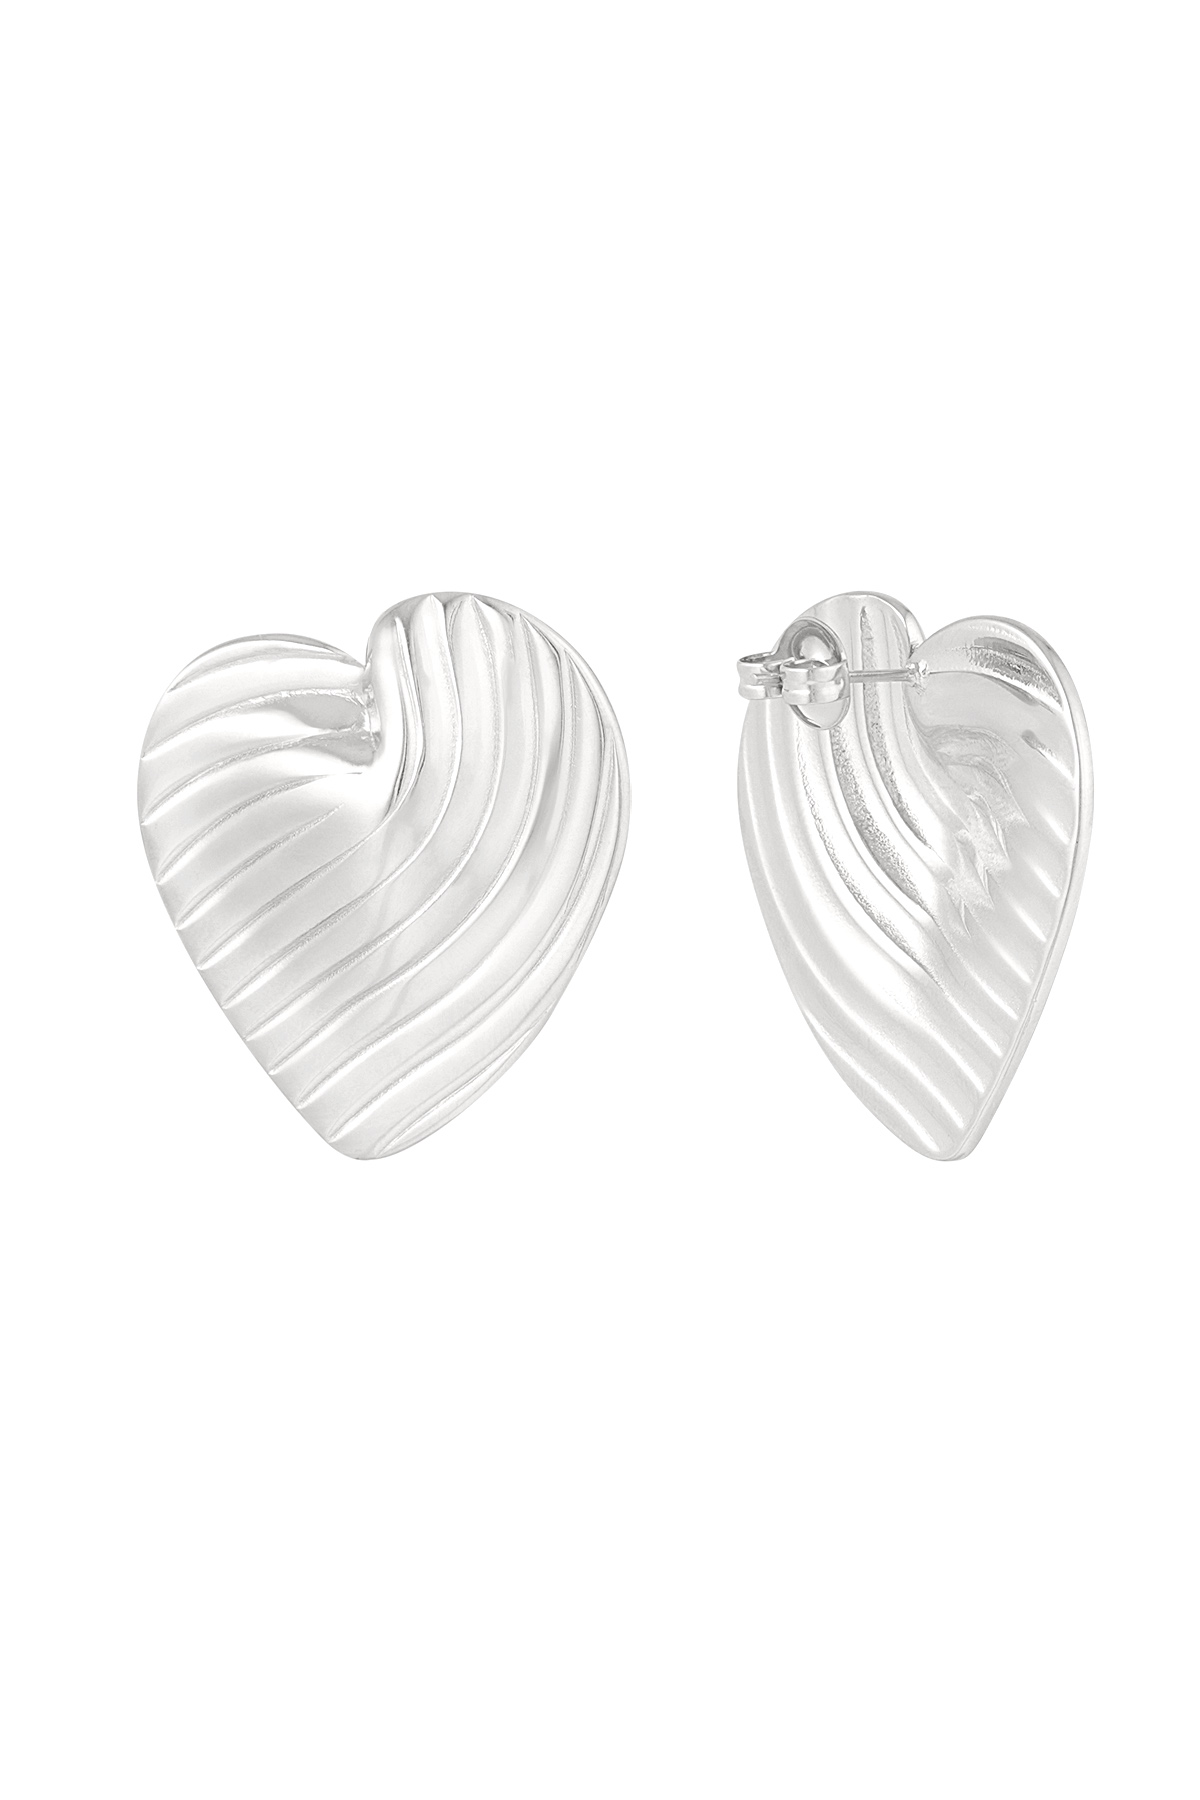 Statement-Ohrringe für immer Liebe – Silber